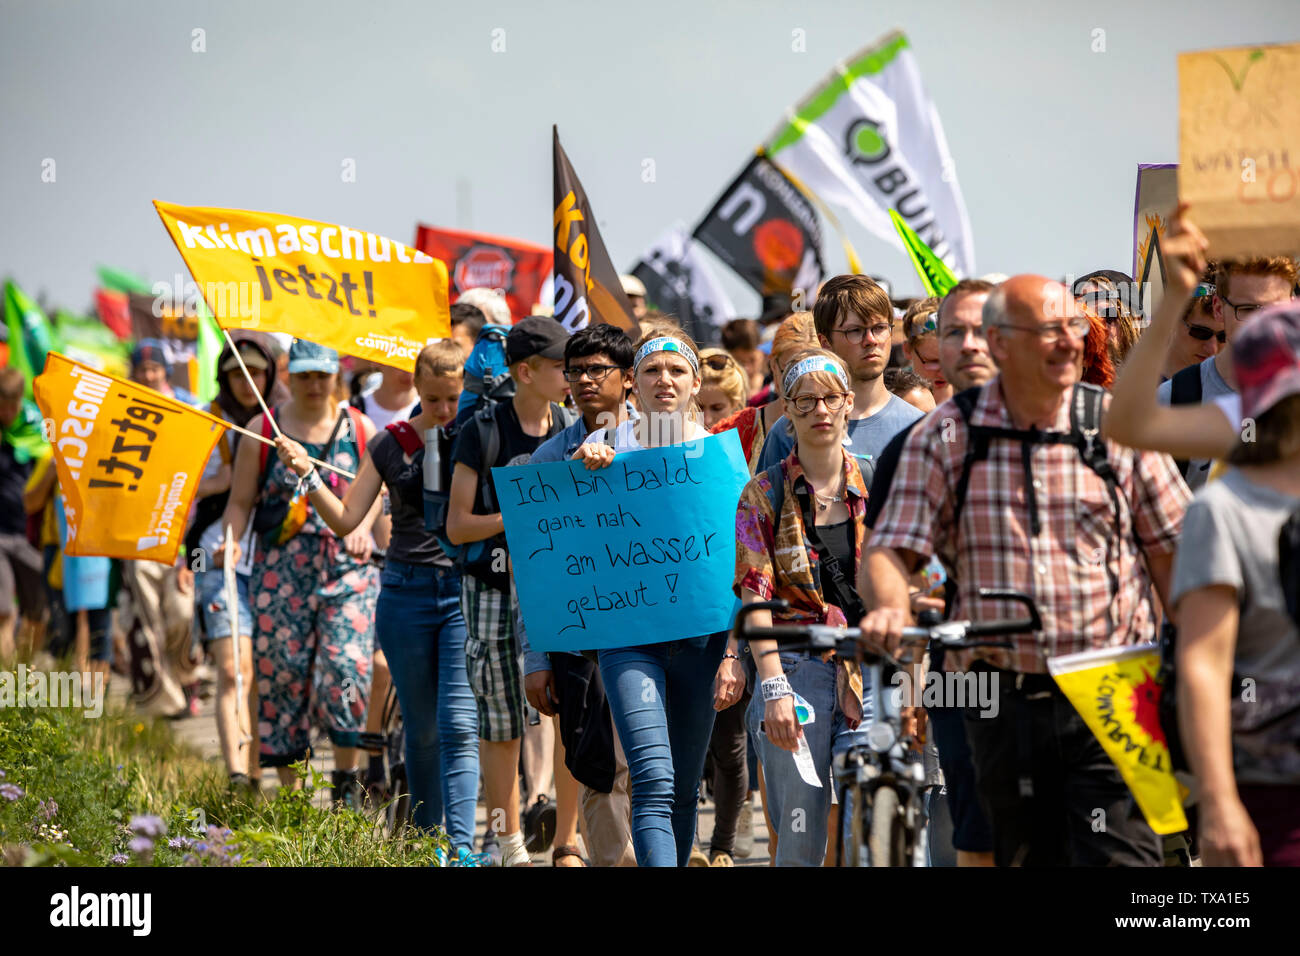 Primera demostración de protección del clima internacional, el clima, el movimiento de huelga el viernes para el futuro, en la mina de lignito Garzweiler, con varios th Foto de stock